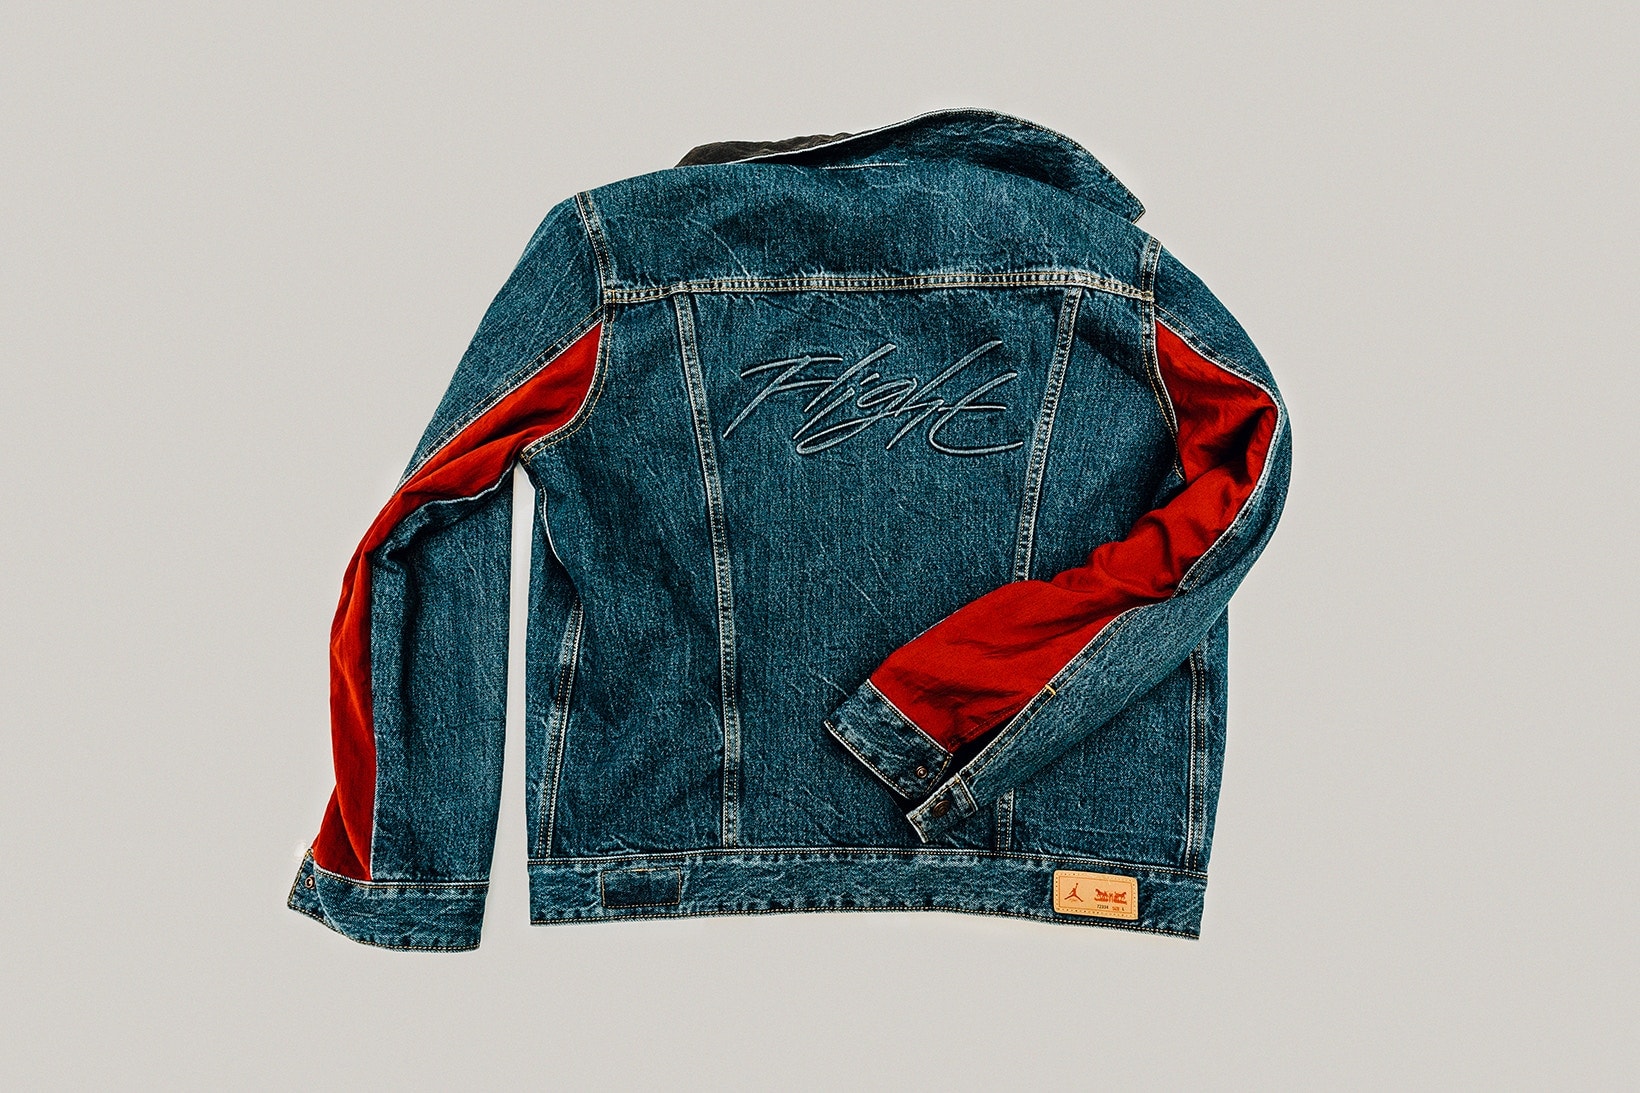 에어 조던 4 리바이스 트러커 재킷 협업 판매처 홍대 매장 2018 air jordan 4 levis trucker jacket collaboration hongdae store